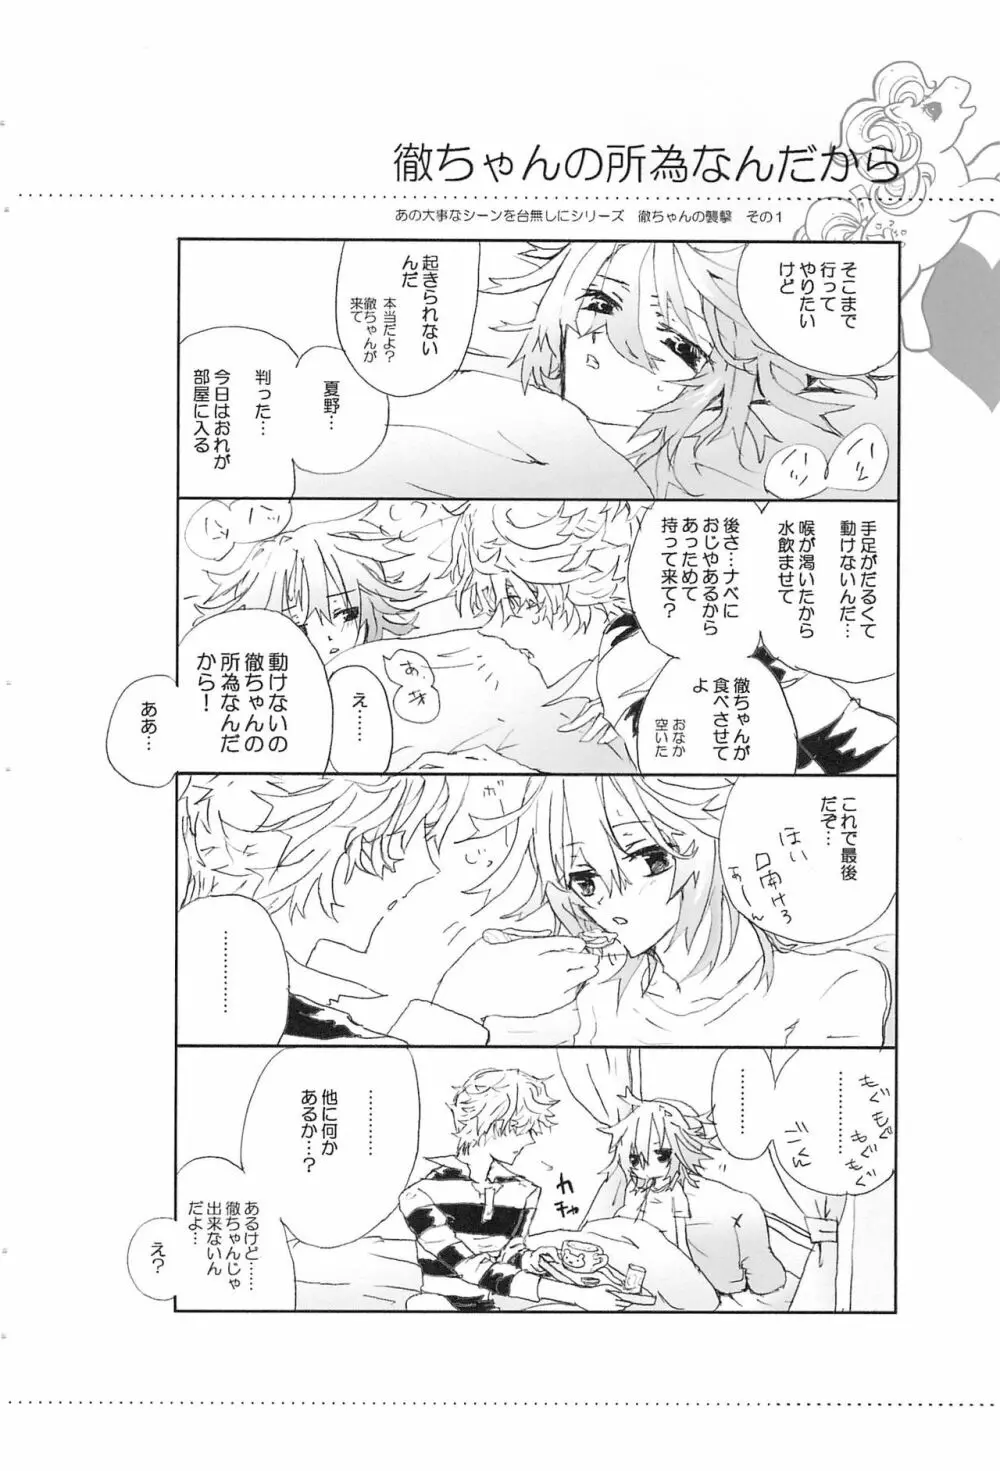 Shiki-hon 6 - page22